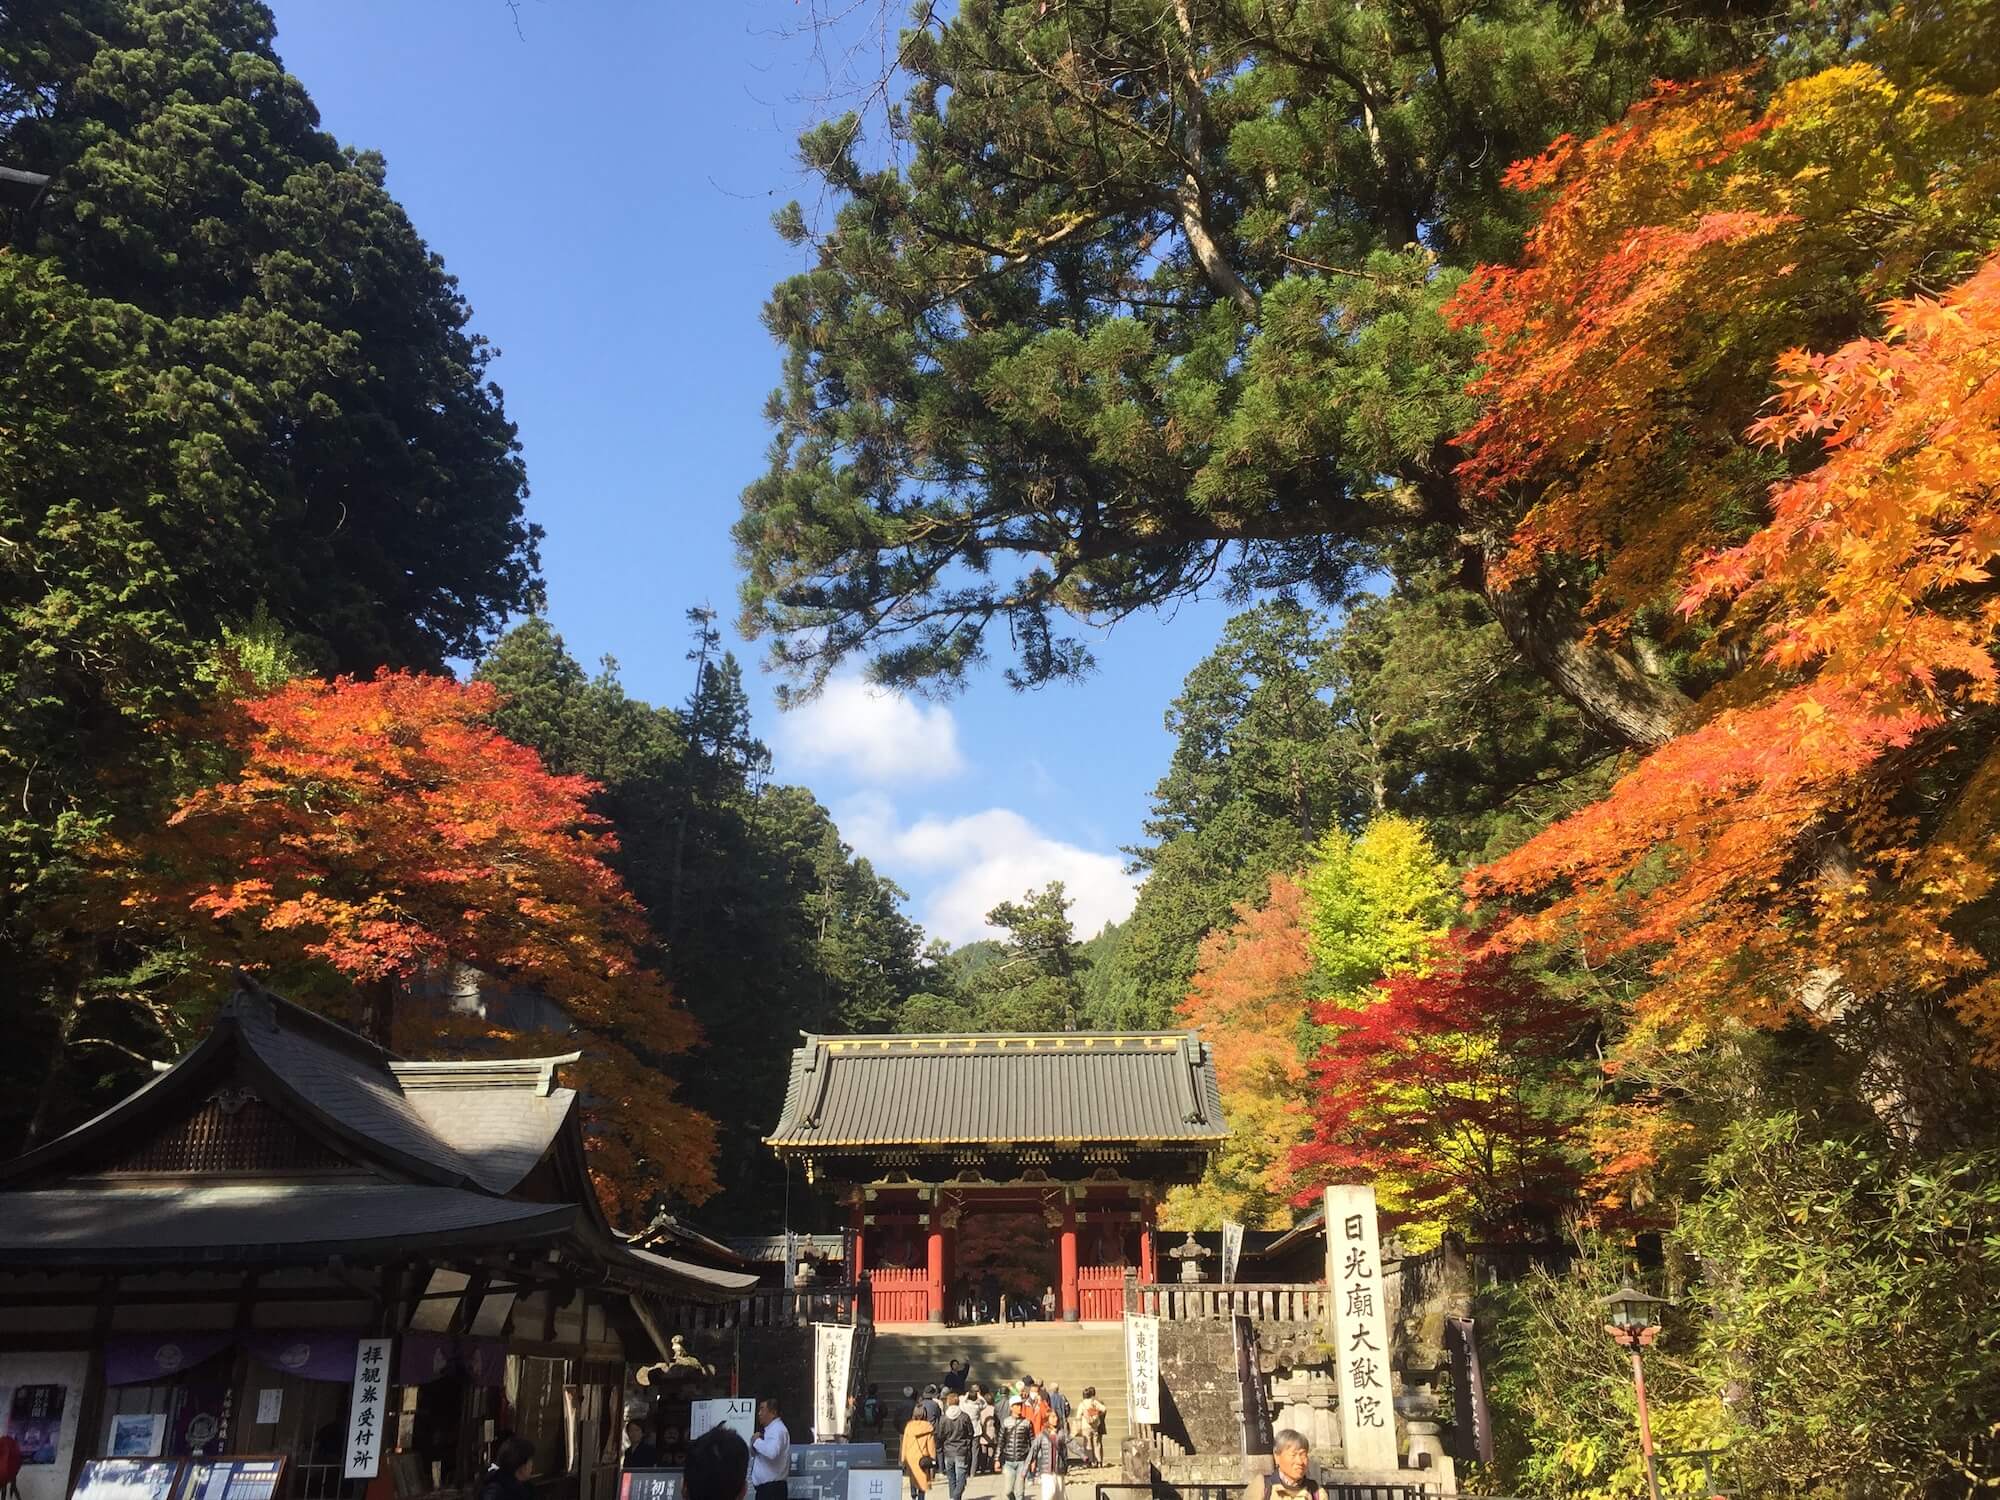 เที่ยวญี่ปุ่น ฤดูใบไม้เปลี่ยนสี 2 วัน 1 คืน ที่นิกโก้ (Nikko) -  คำแนะนำสไตล์การท่องเที่ยวญี่ปุ่น 100 แบบ